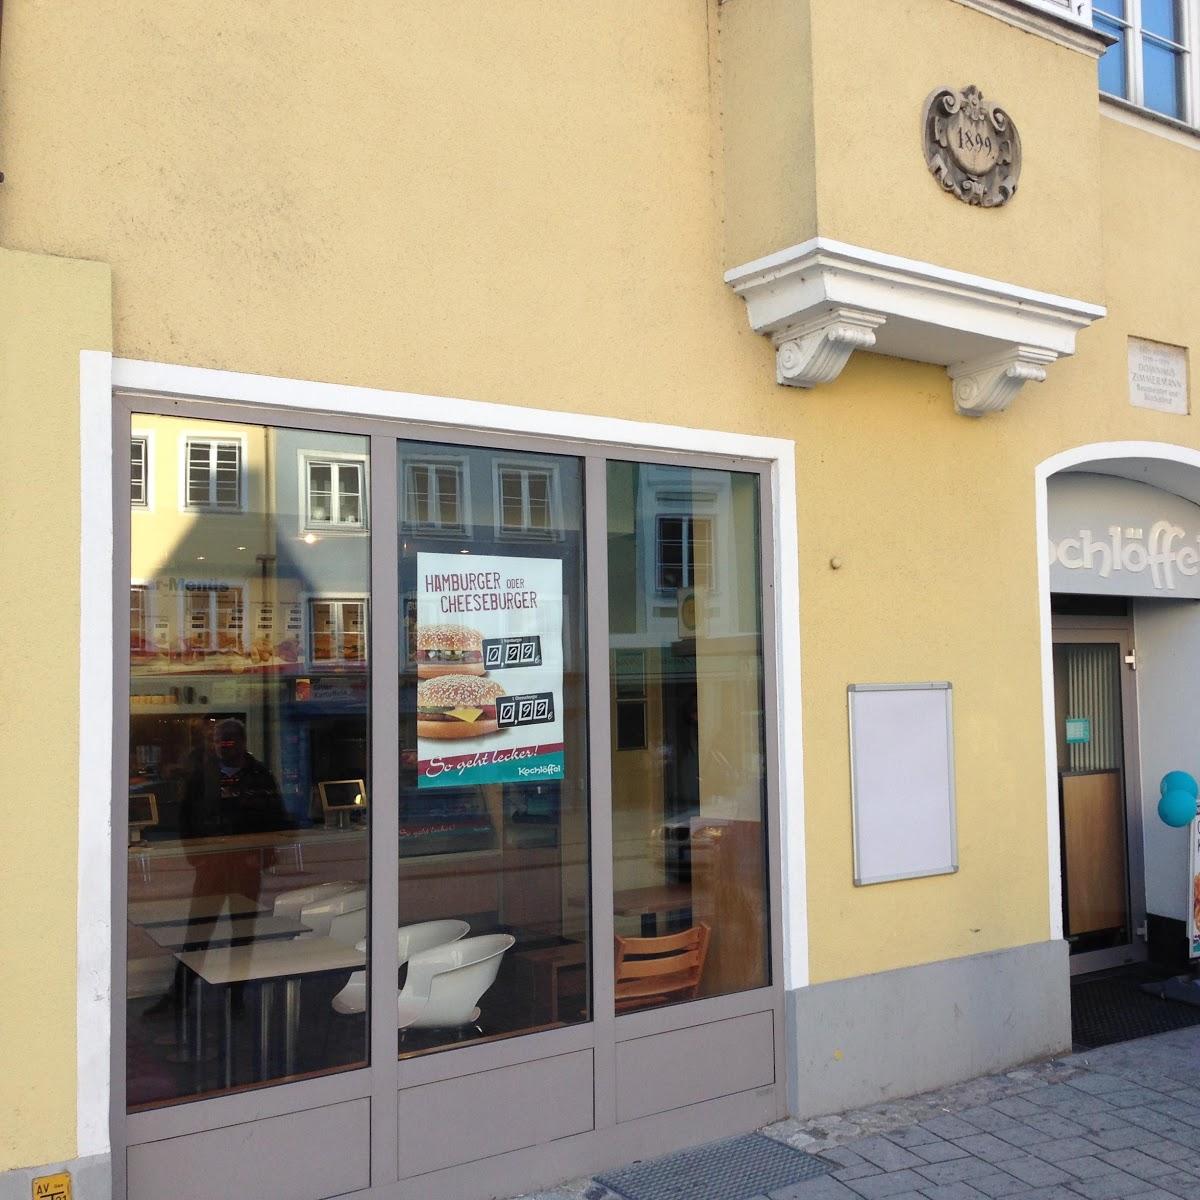 Restaurant "Kochlöffel" in Landsberg am Lech